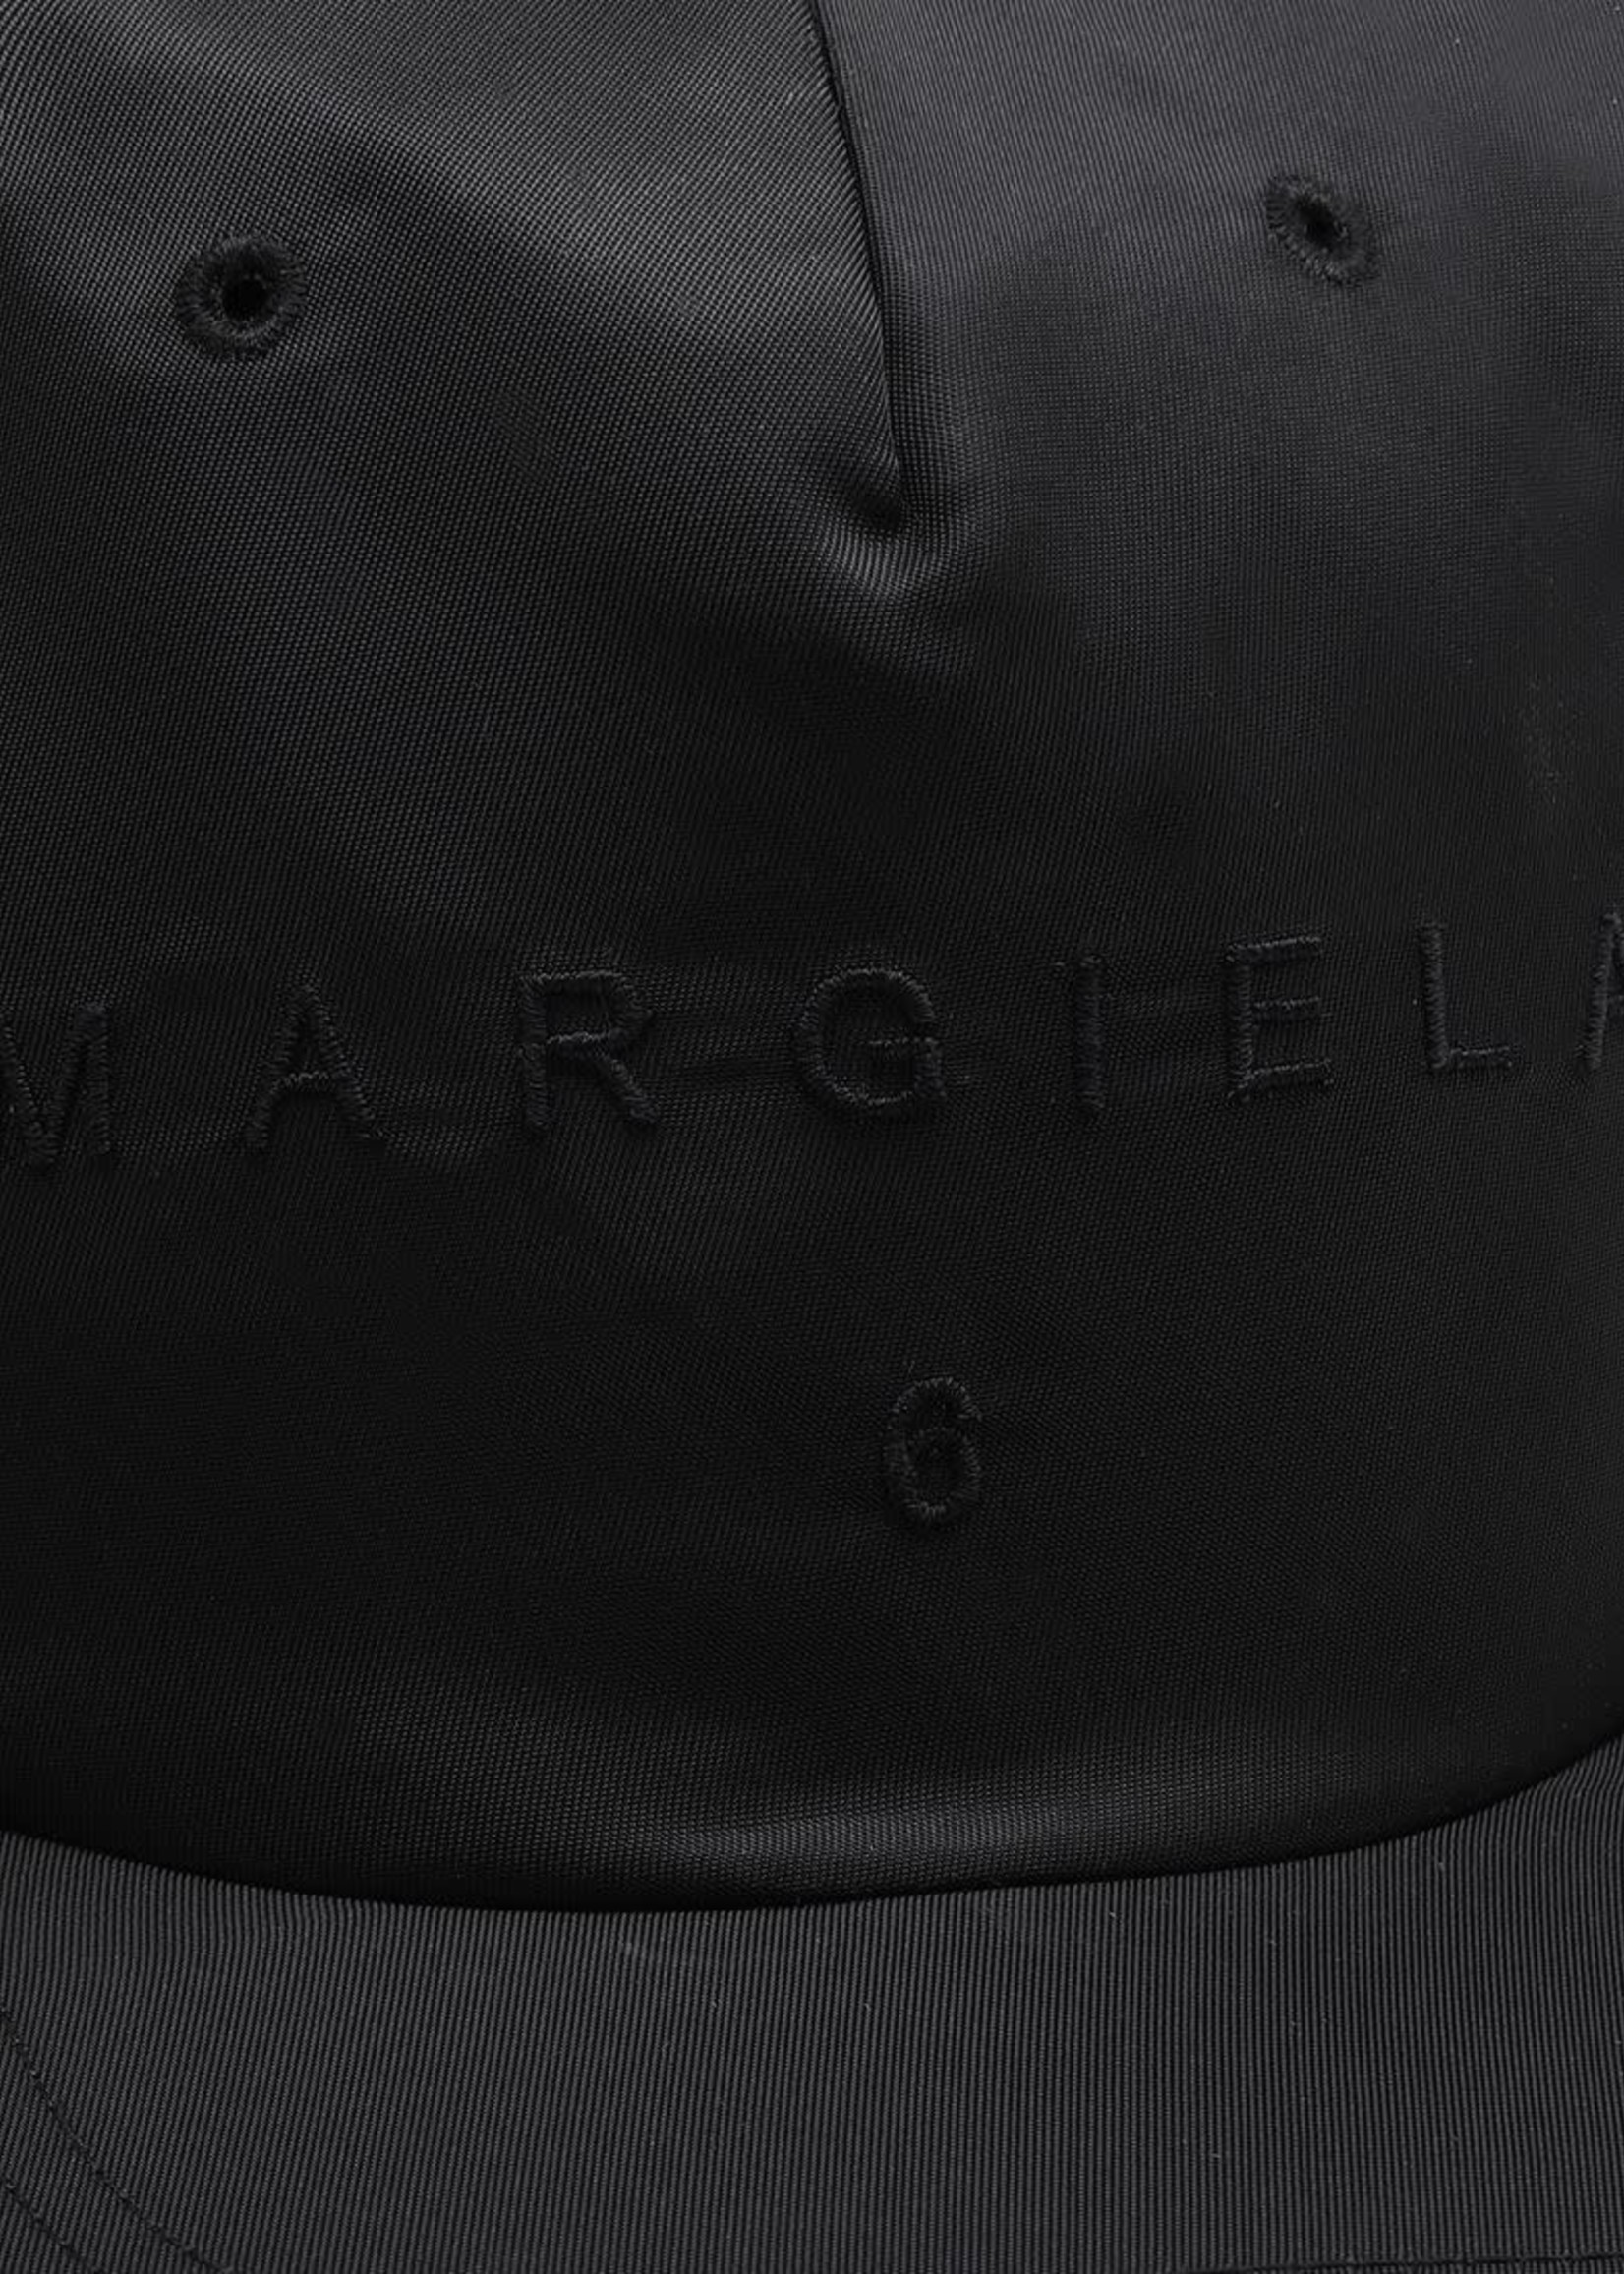 MM6 MAISON MARGIELA Nylon Logo Ball Cap in Black